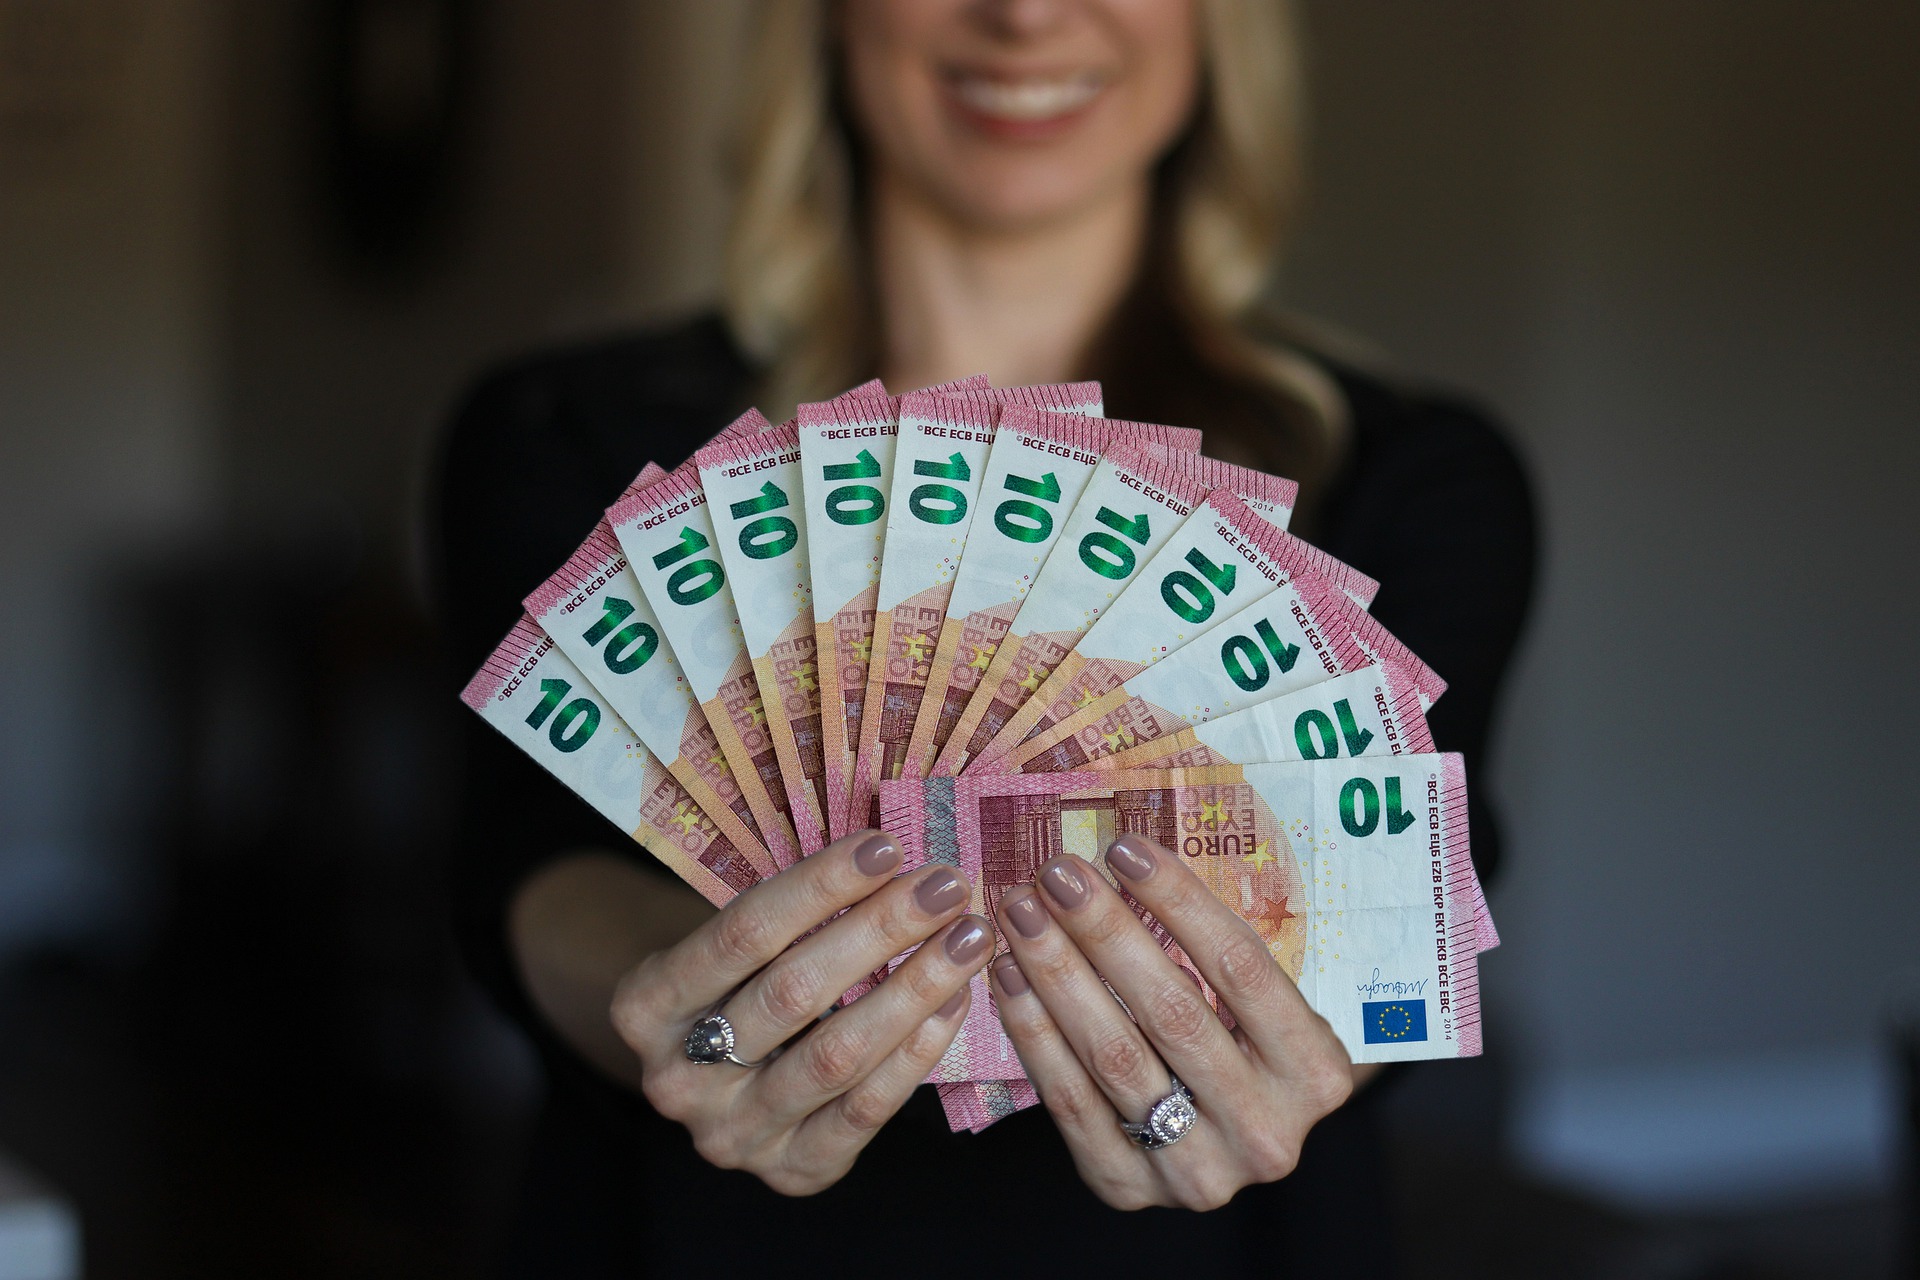 Der Stadtrat hat daher einstimmig beschlossen, den Teuerungsausgleich auf 100 Euro beziehungsweise 200 Euro zu erhöhen (Foto: Pixabay)